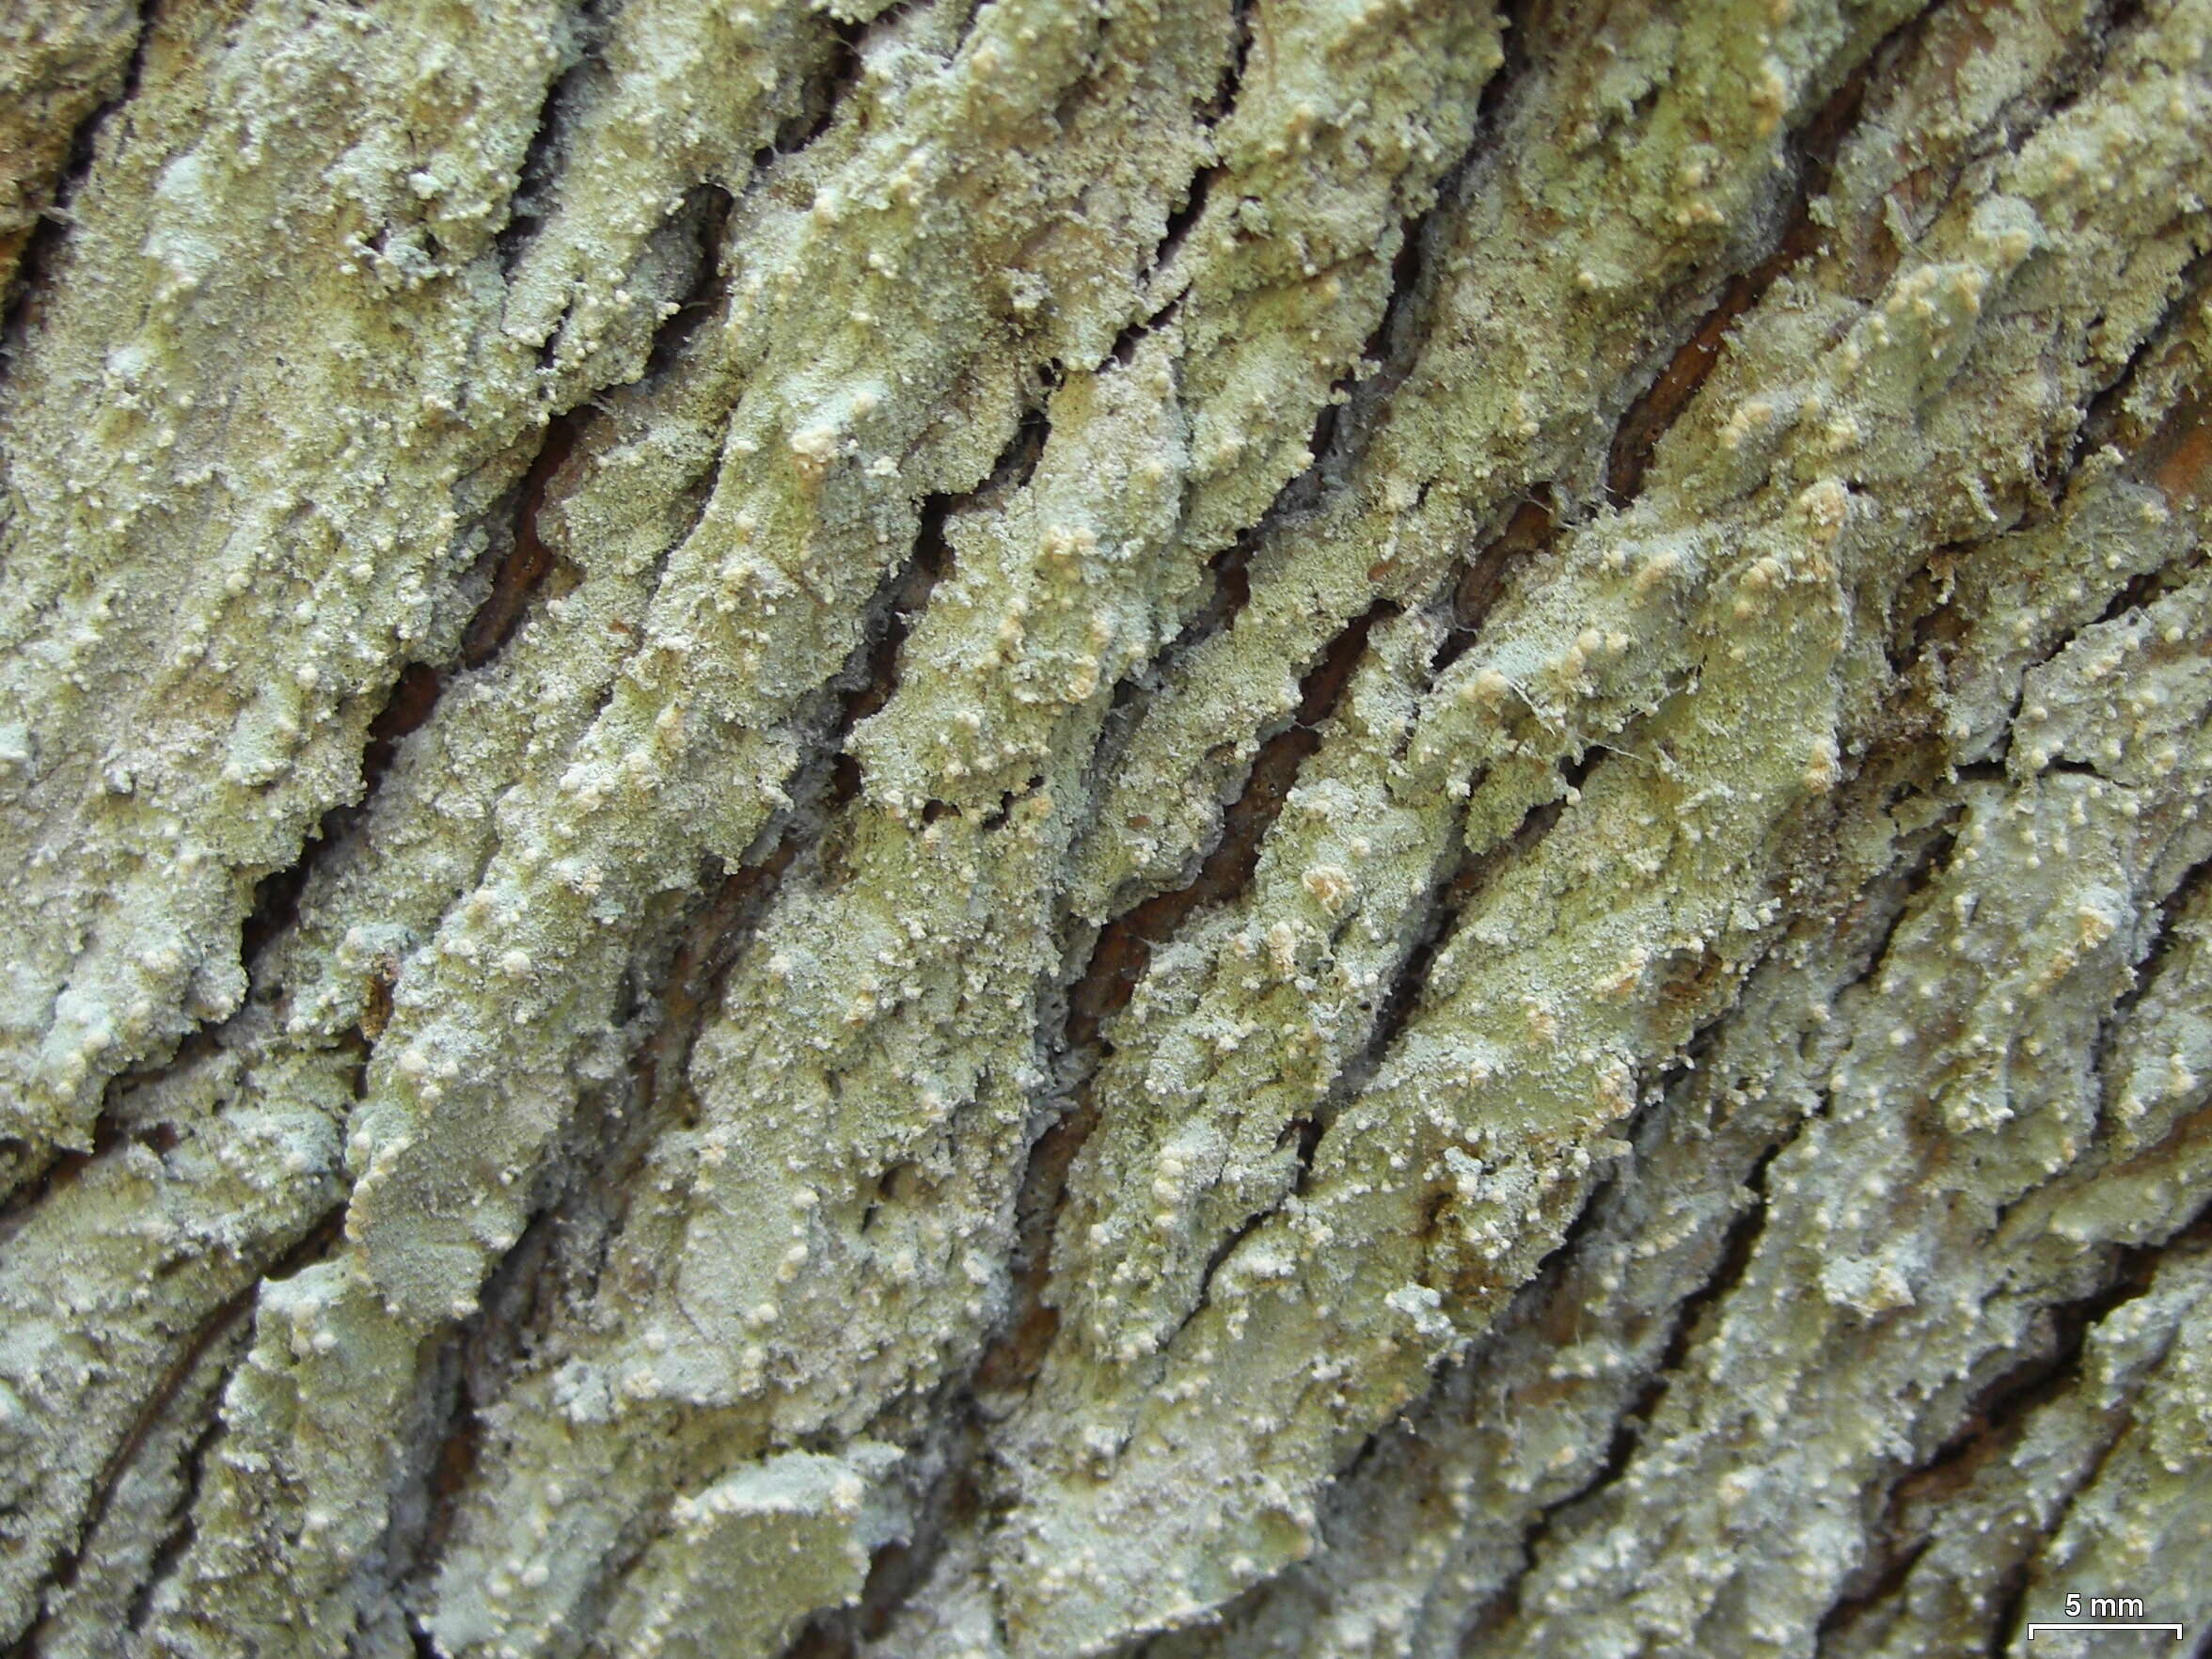 Image of Cryptothecia punctosorediata Sparrius